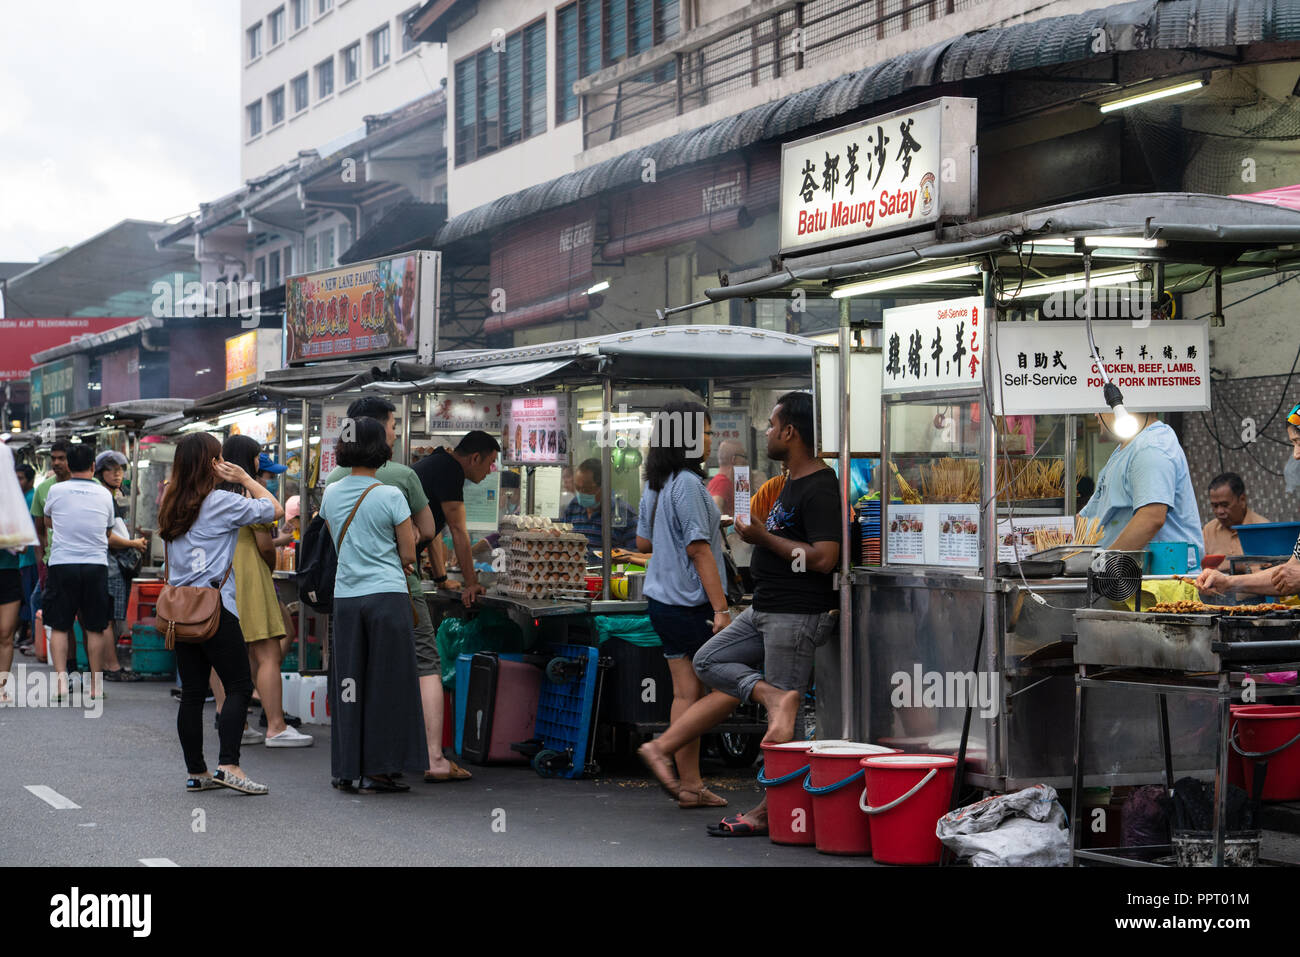 GEORGE TOWN, MALAISIE - 14 septembre 2018 : Les gens se promènent dans la rue à George Town, Penang, Malaisie en rechercher le meilleur street food. Banque D'Images